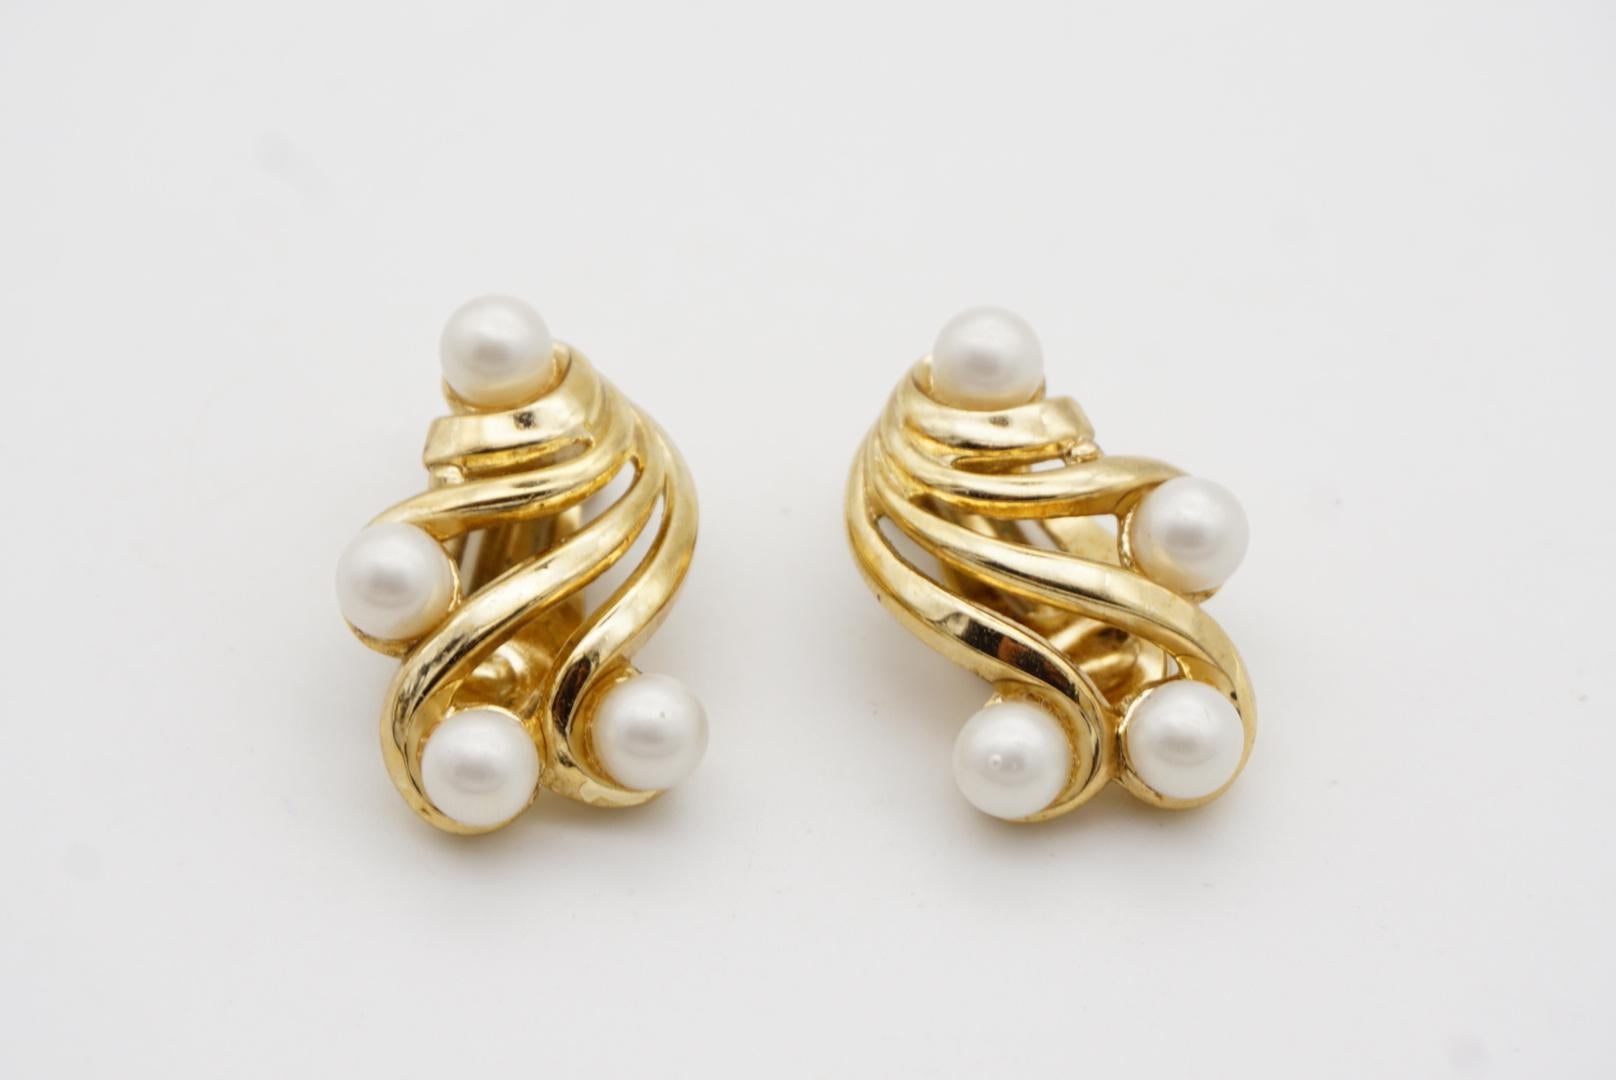 Crown Trifari Vintage 1950s Flower Wing White Pearls Openwork Interlock Earrings For Sale 5